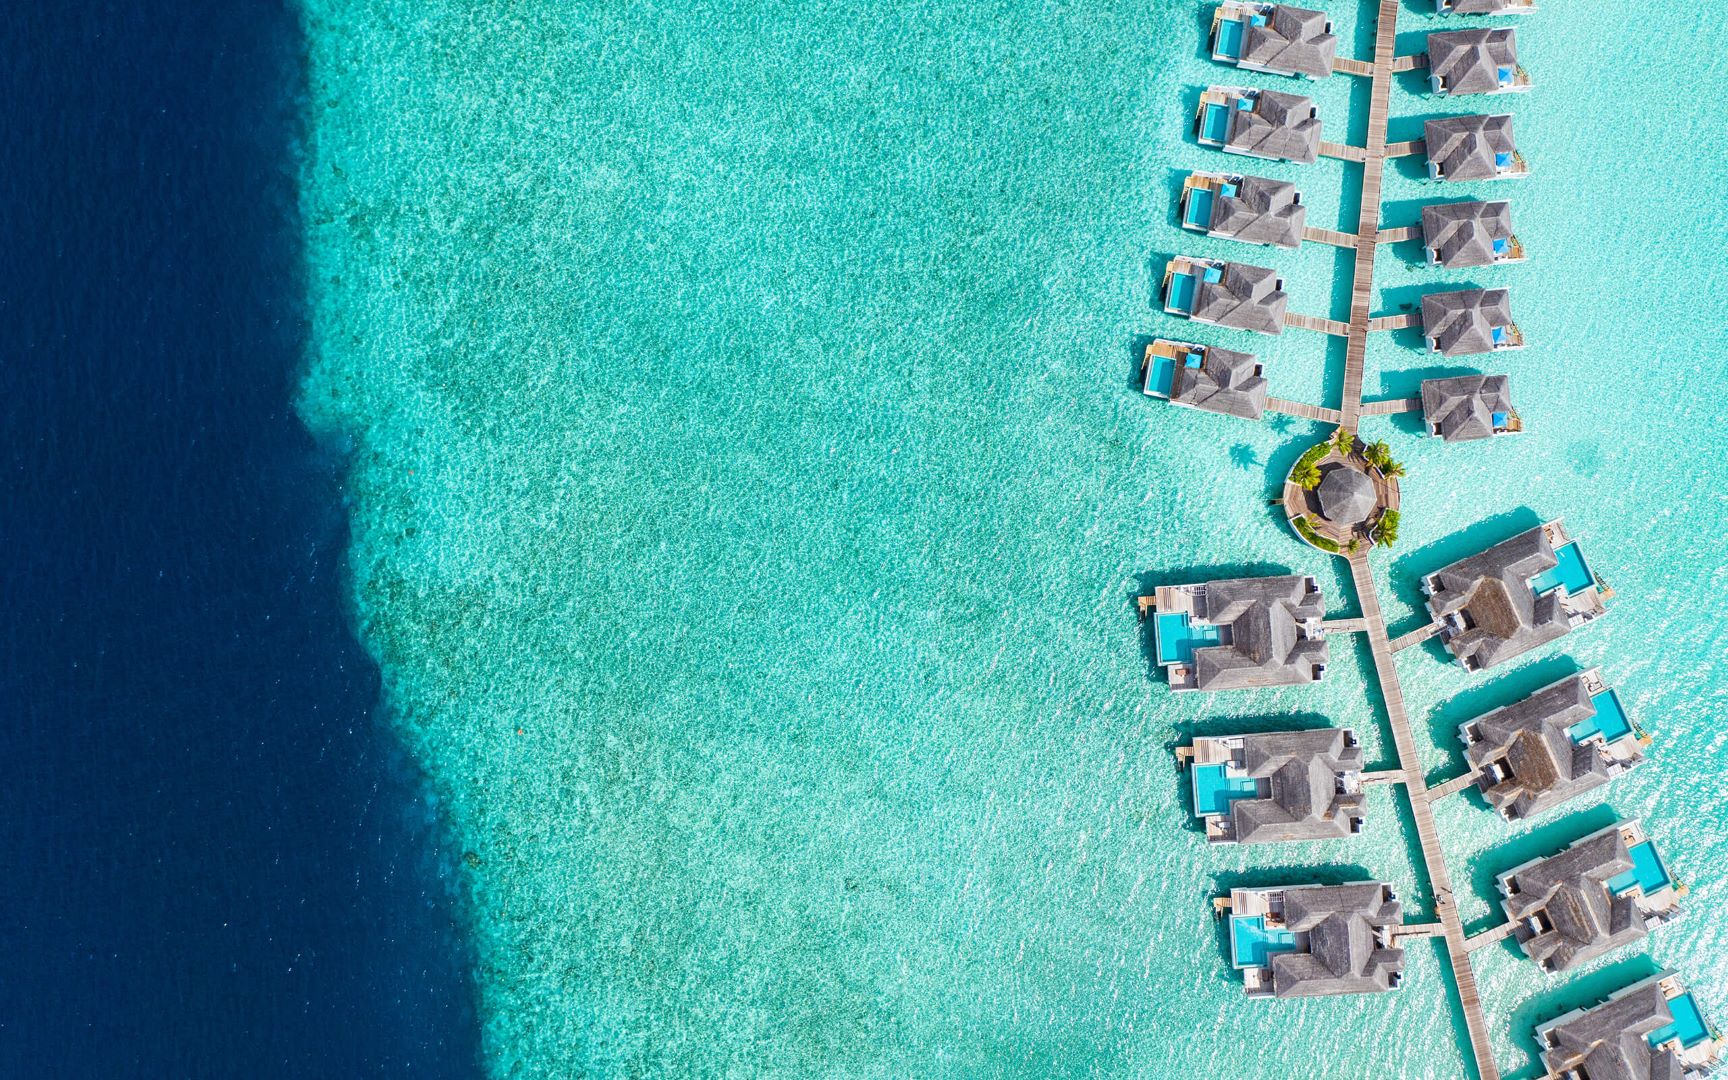 منتجع فينولهو .. الملاذ الآسر على شاطئ جزر با أتول في المالديف